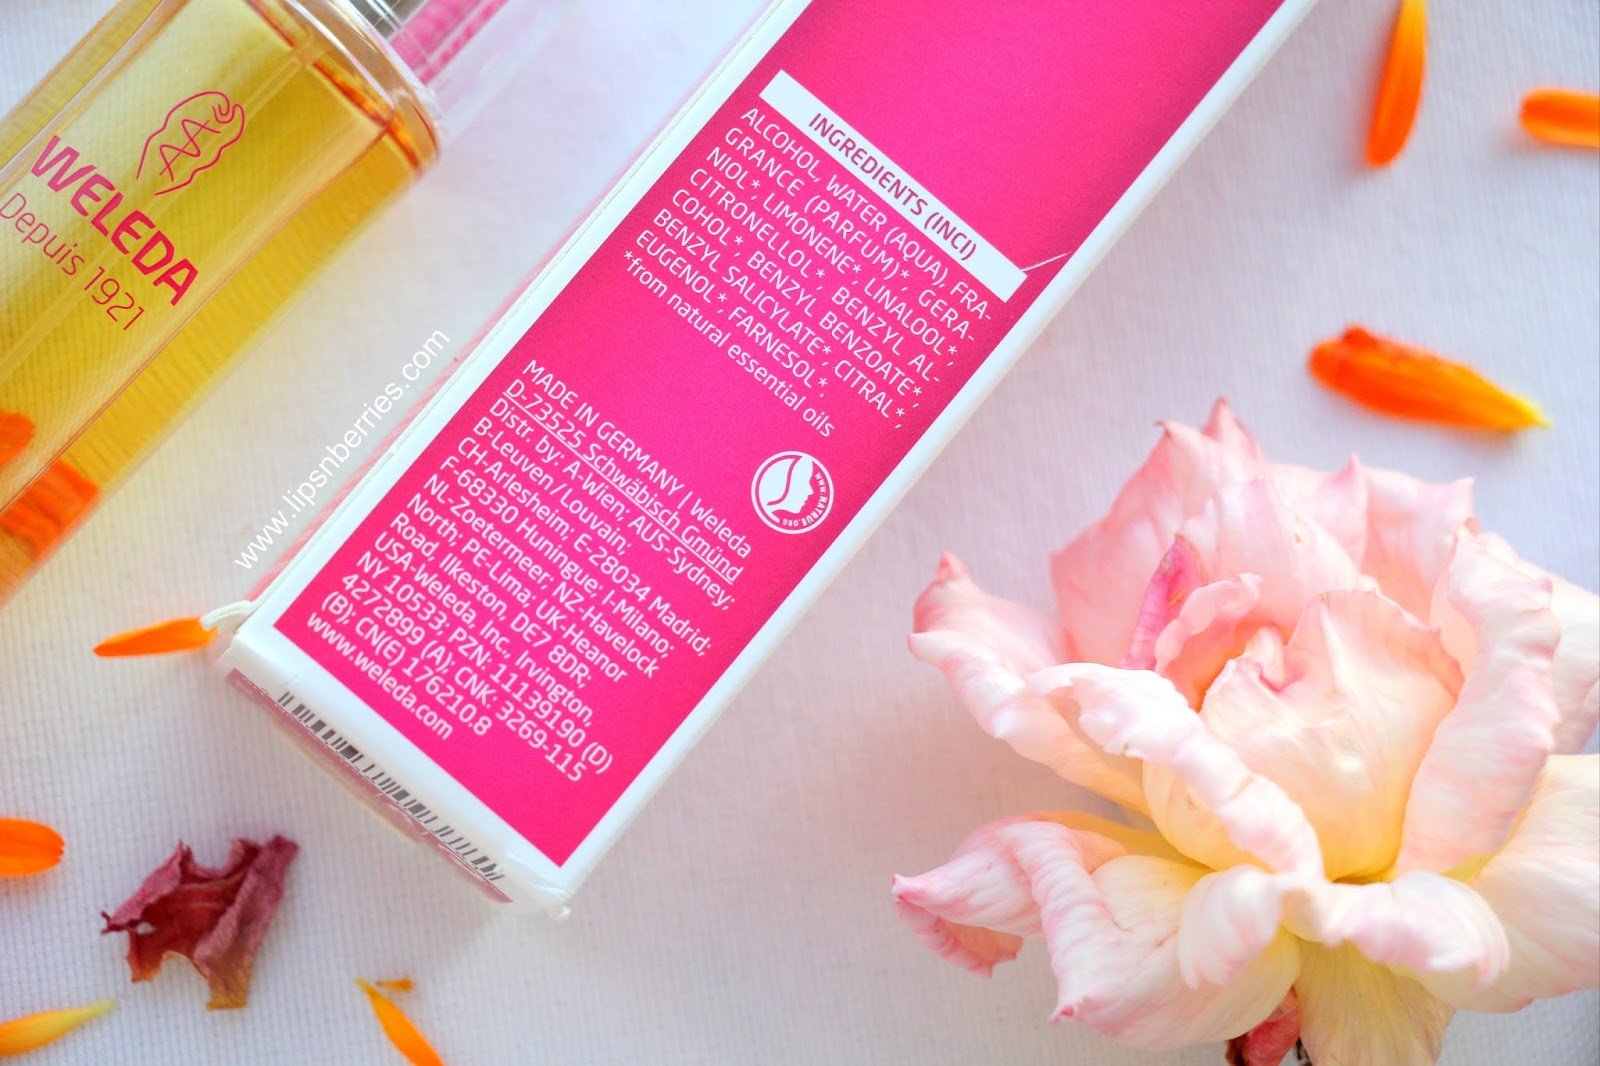 Weleda Jardin de Vie Rose/ Wild Rose Natural Perfume Review